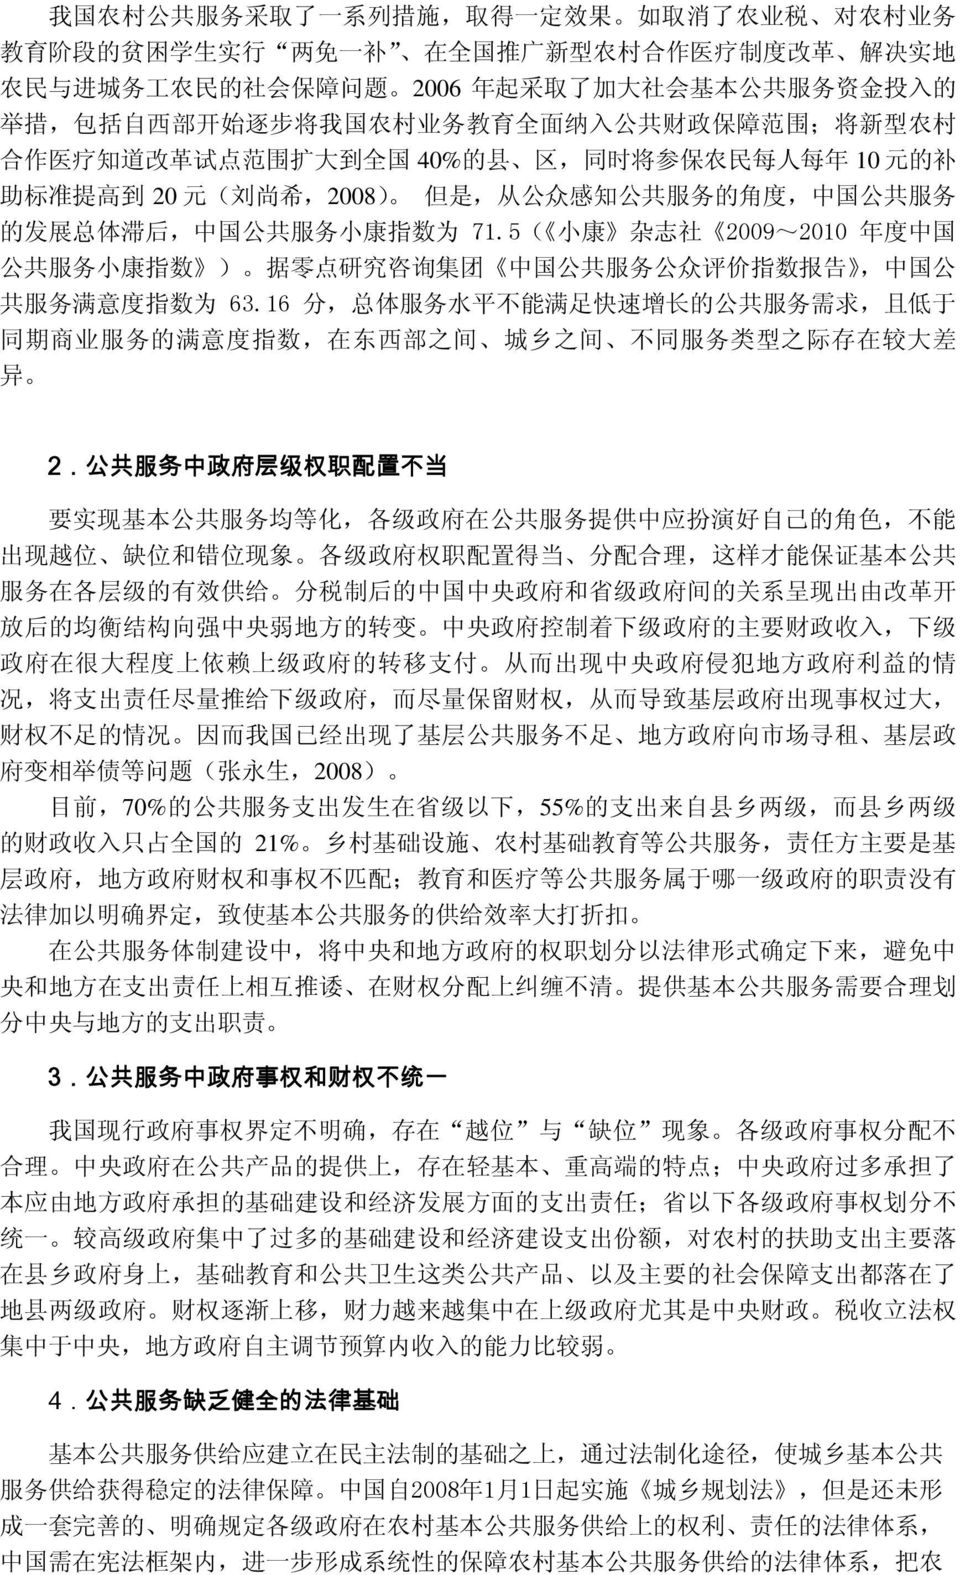 希,2008) 但 是, 从 公 众 感 知 公 共 服 务 的 角 度, 中 国 公 共 服 务 的 发 展 总 体 滞 后, 中 国 公 共 服 务 小 康 指 数 为 71.